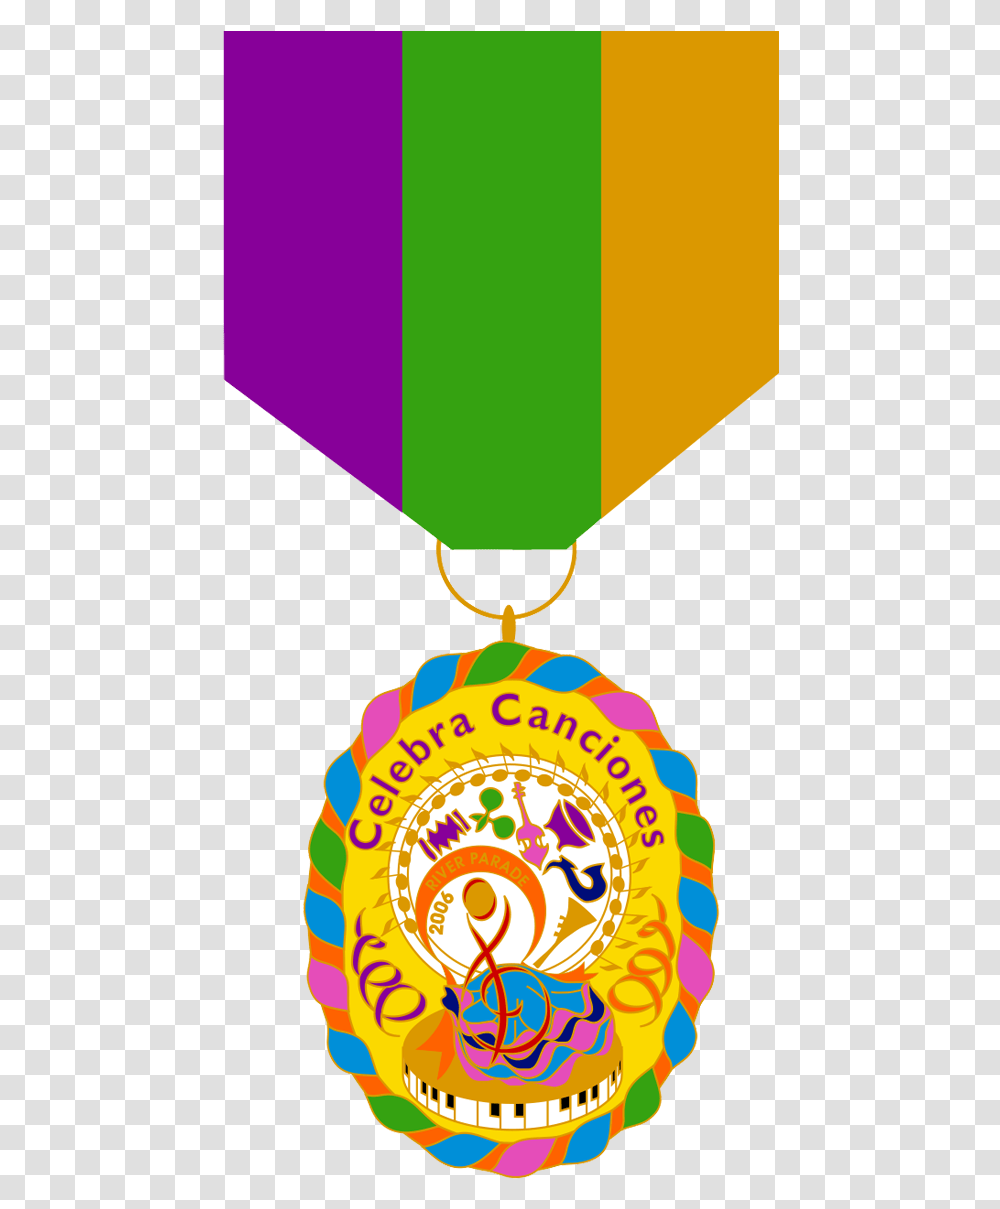 Taste Of New Orleans San Antonio Medal, Trophy, Gold, Gold Medal Transparent Png